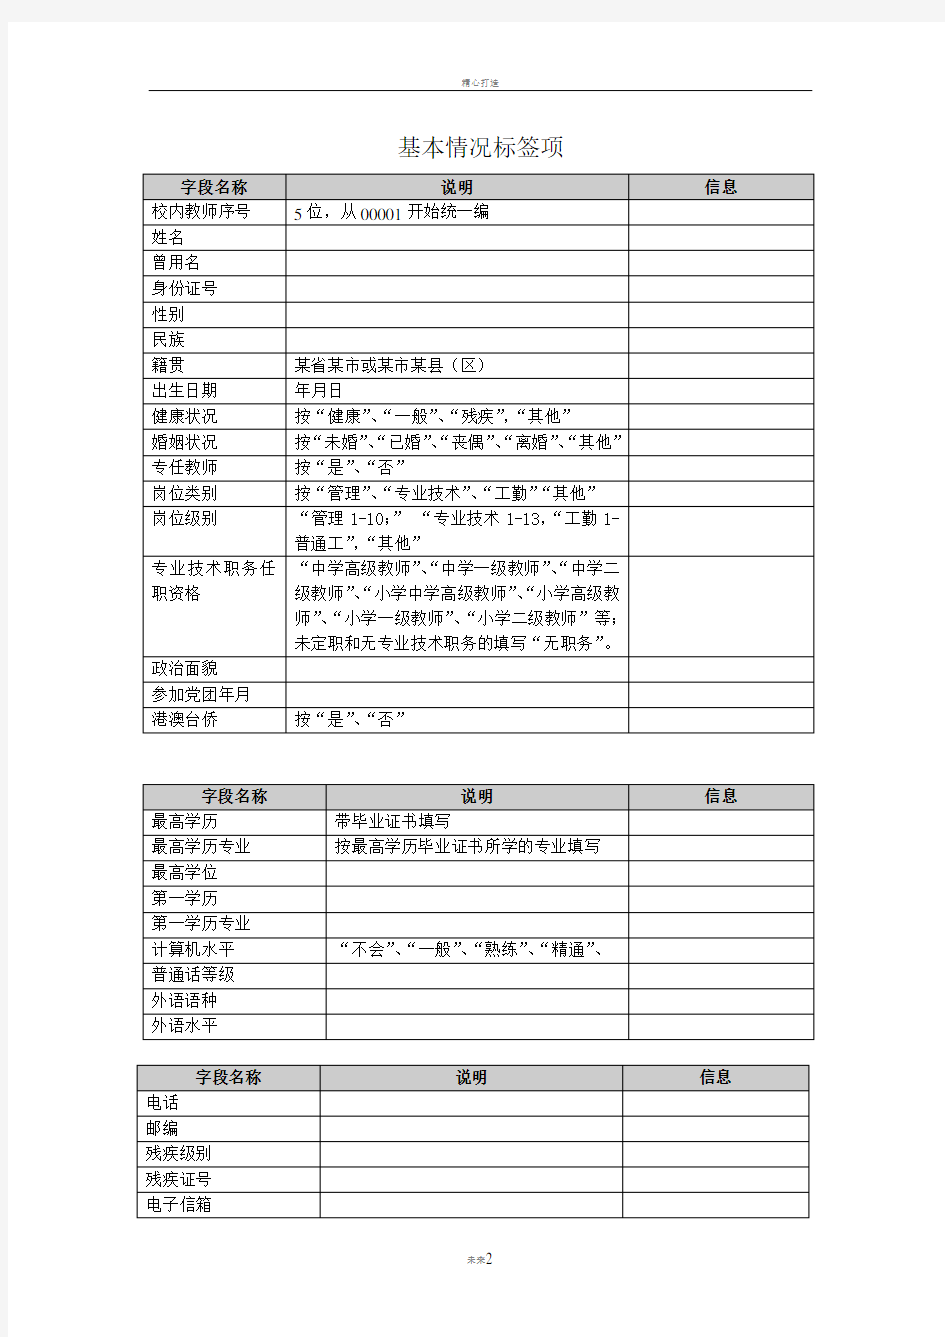 陕西省中小学教职工信息管理系统